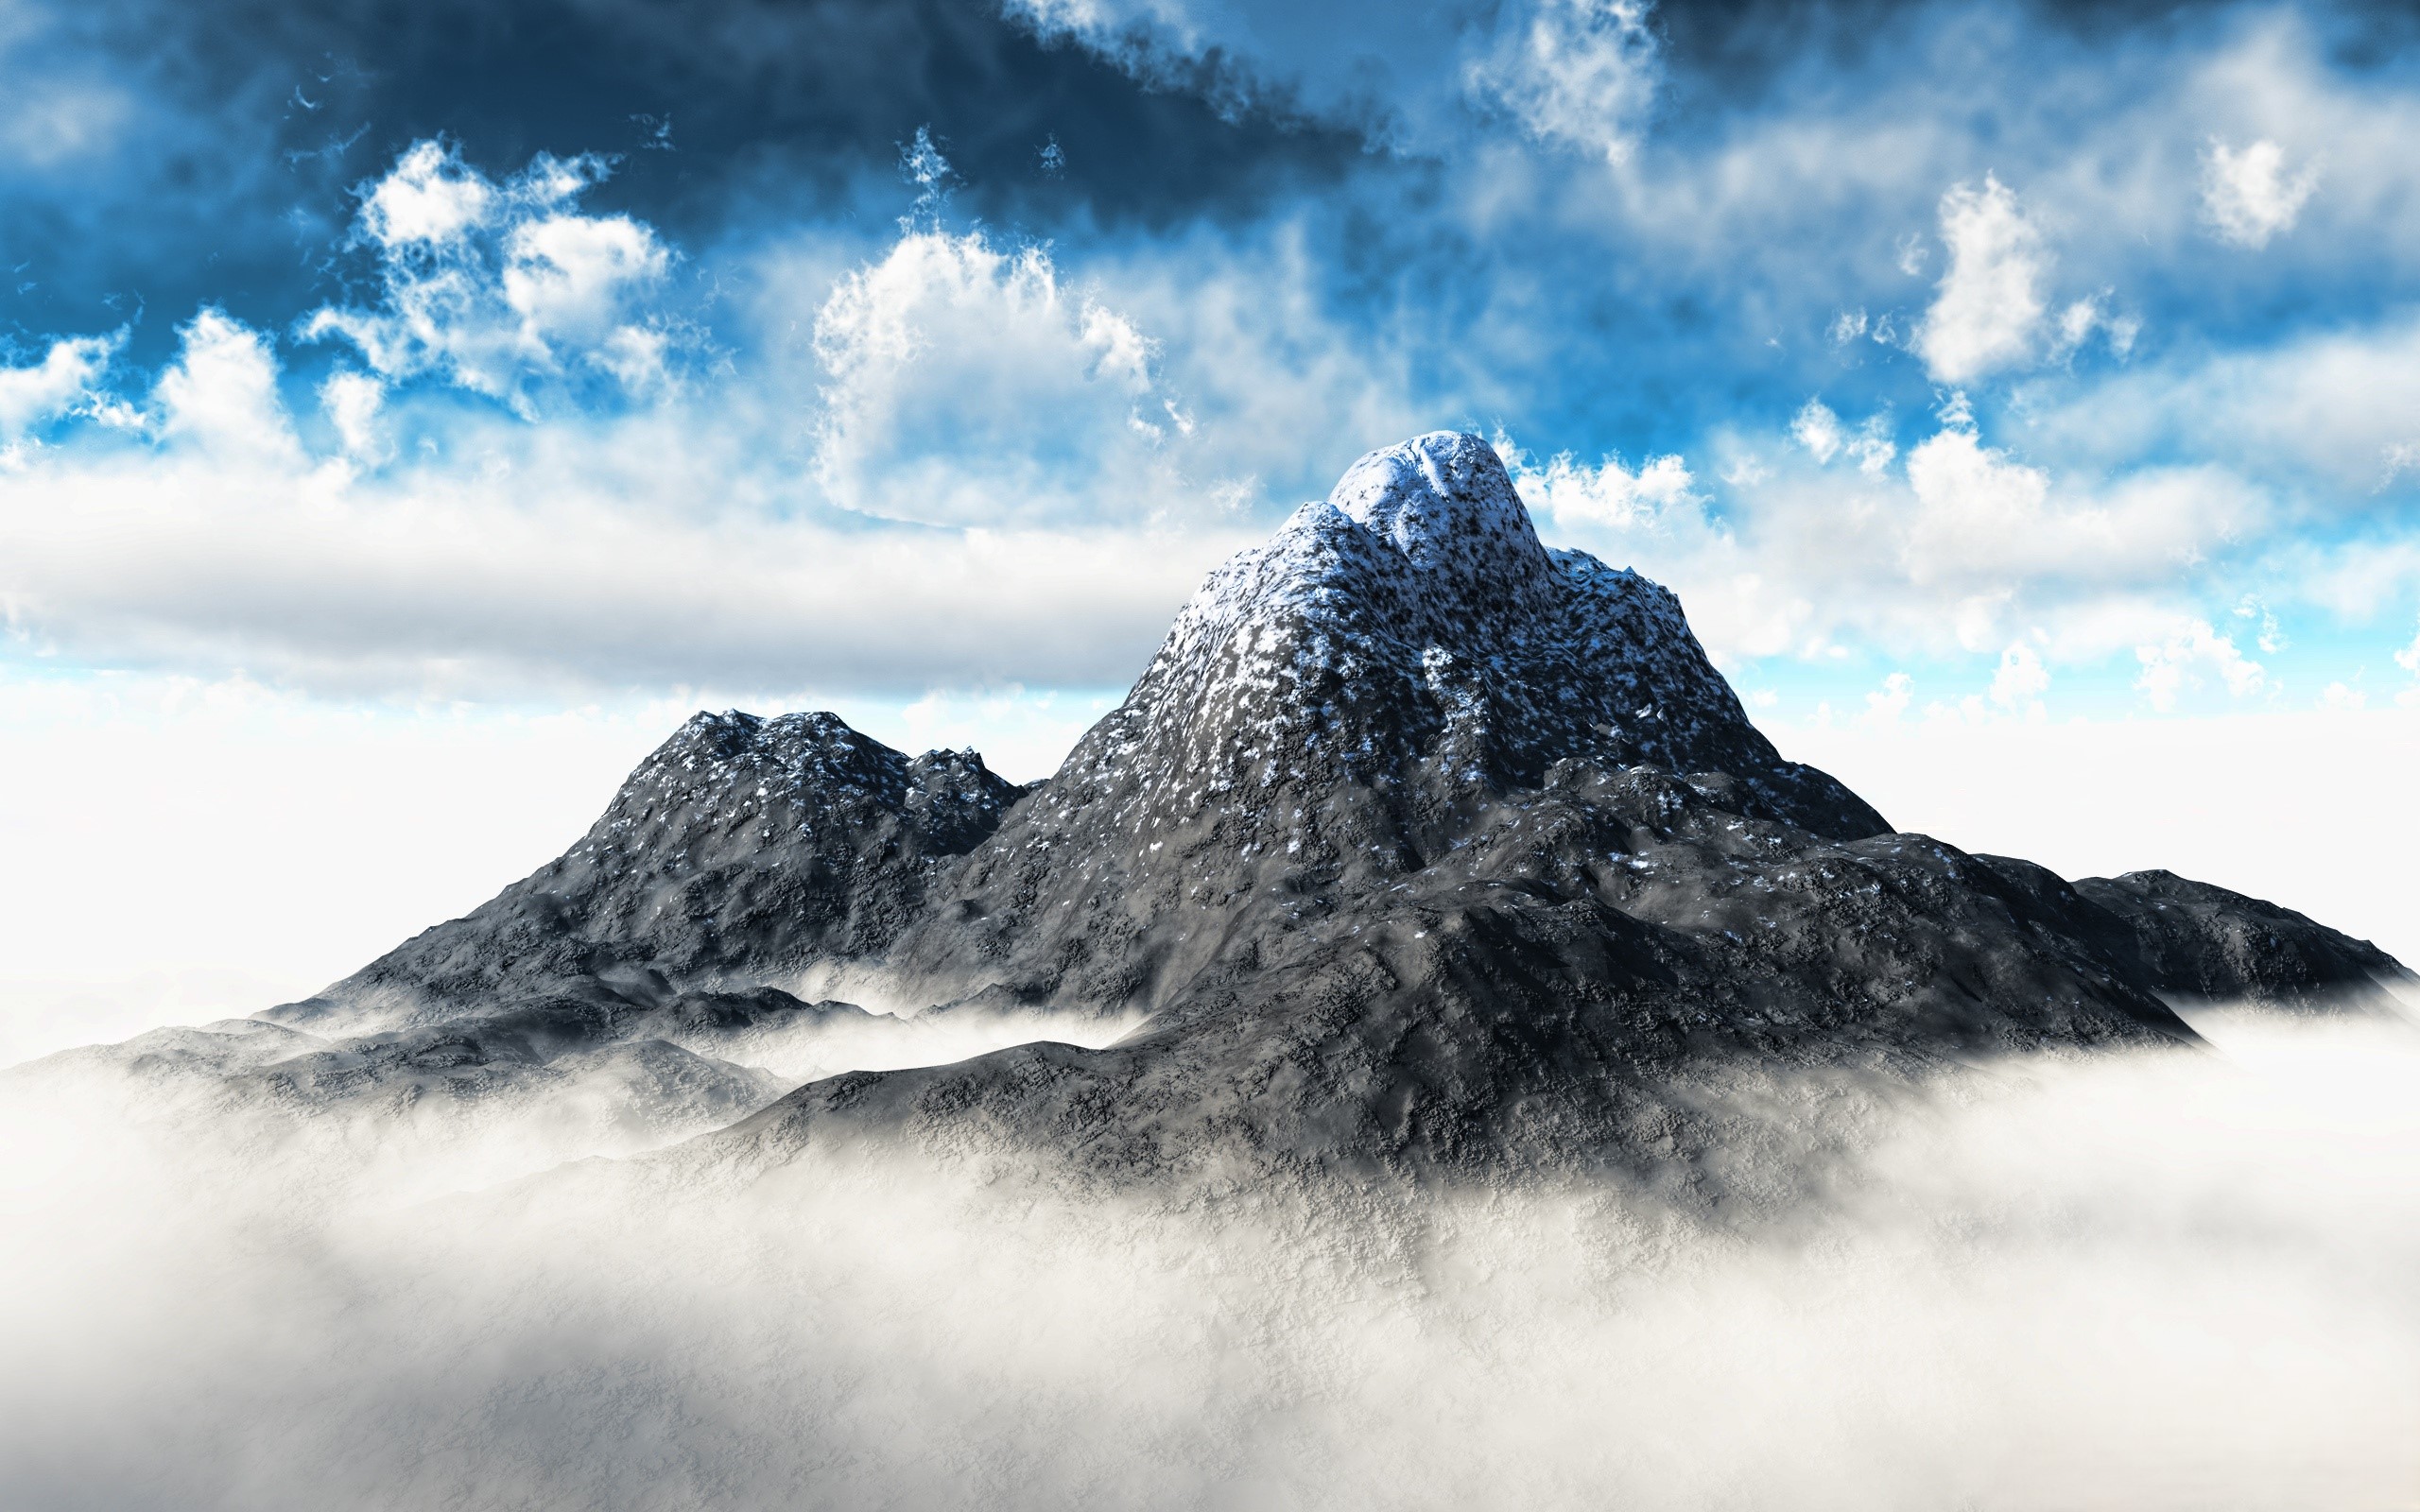 Phong cảnh đám mây lơ lửng trên đỉnh núi 12